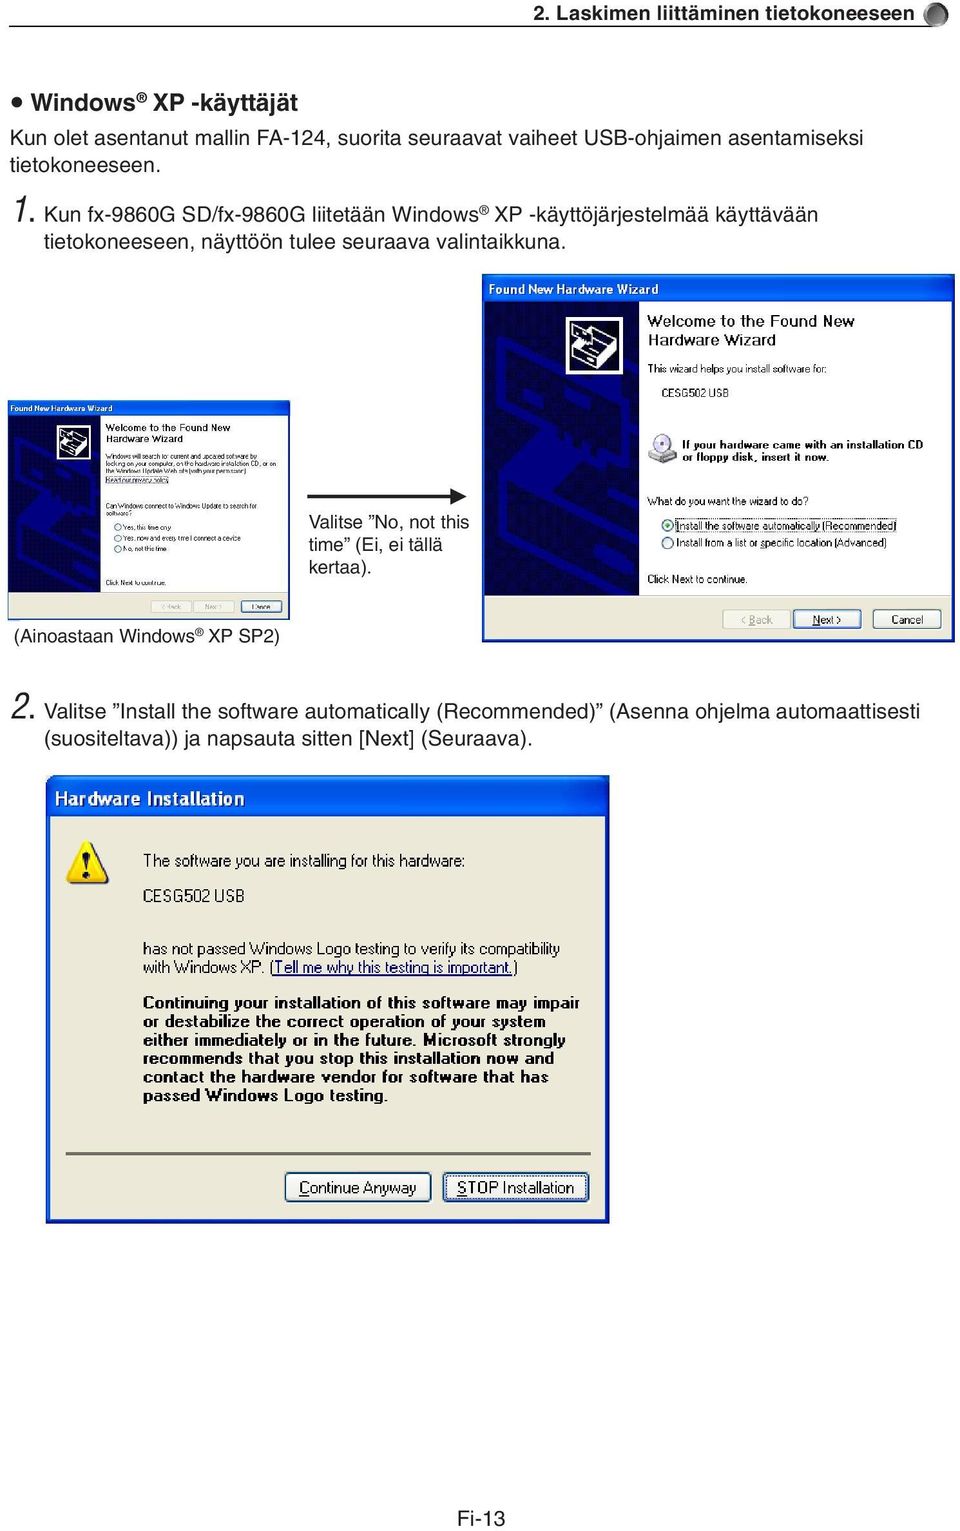 Kun fx-9860g SD/fx-9860G liitetään Windows XP -käyttöjärjestelmää käyttävään tietokoneeseen, näyttöön tulee seuraava valintaikkuna.